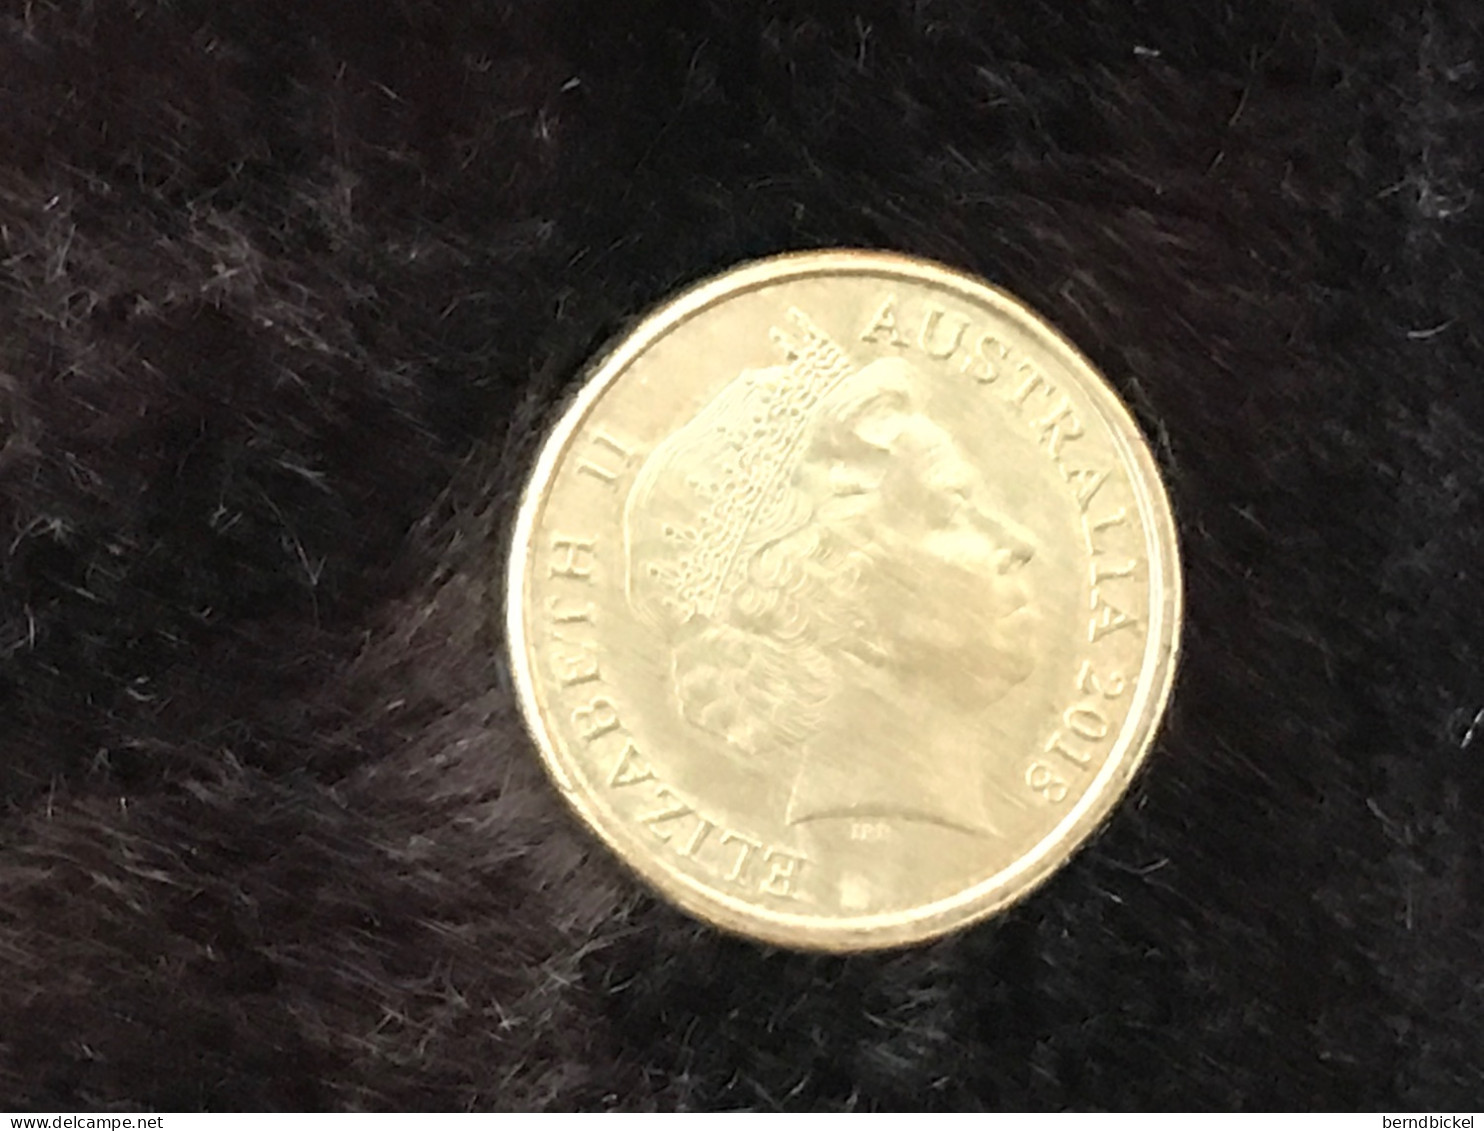 Münze Münzen Umlaufmünze Gedenkmünze Australien 2 Dollar 2018 100 Jahre Kriegsend - Dollar